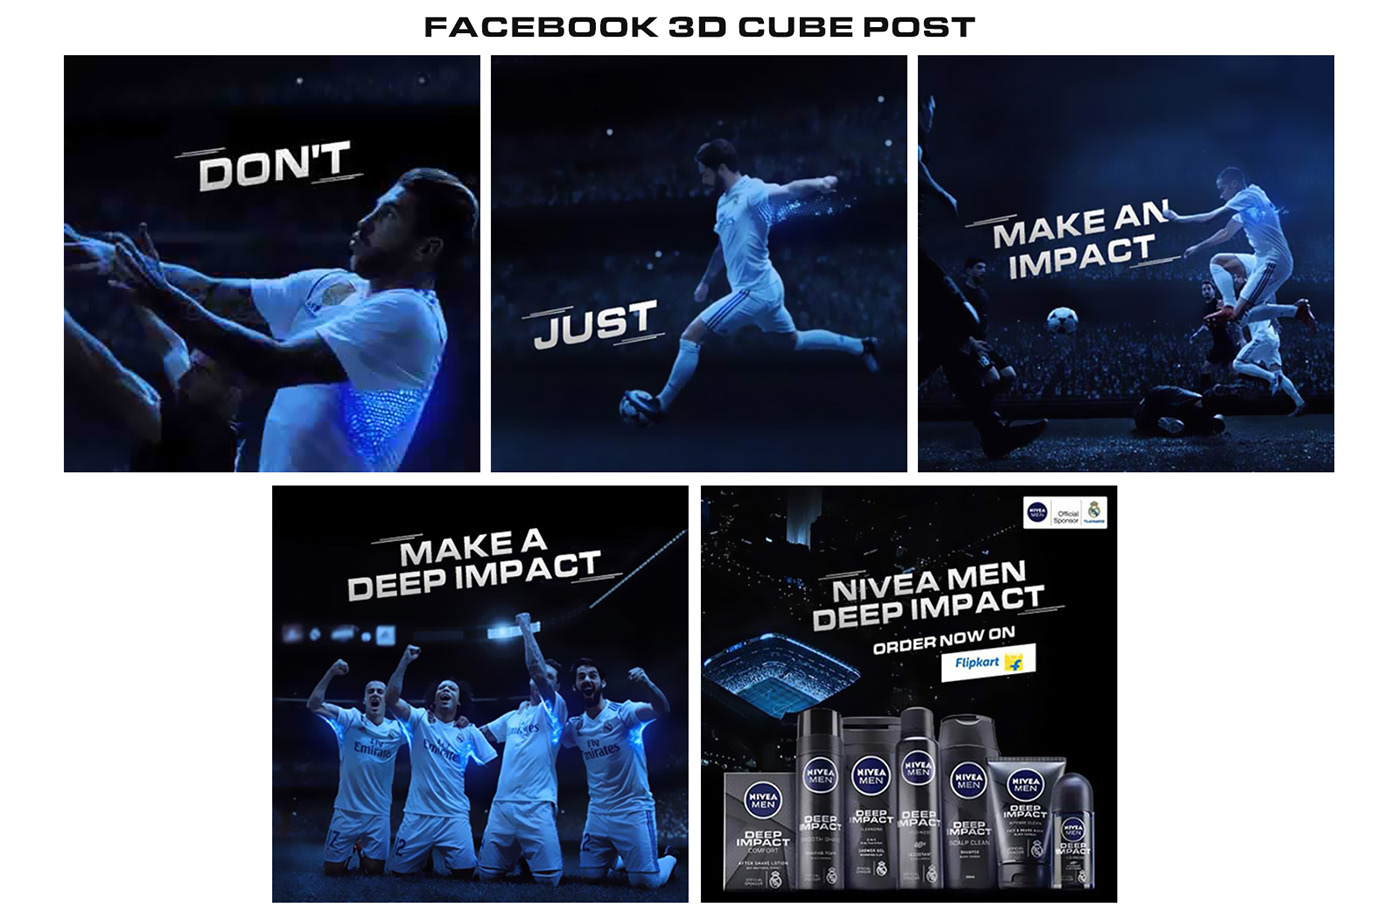 Nivea niveamen Real Madrid sport nivea india social media facebook 3d post